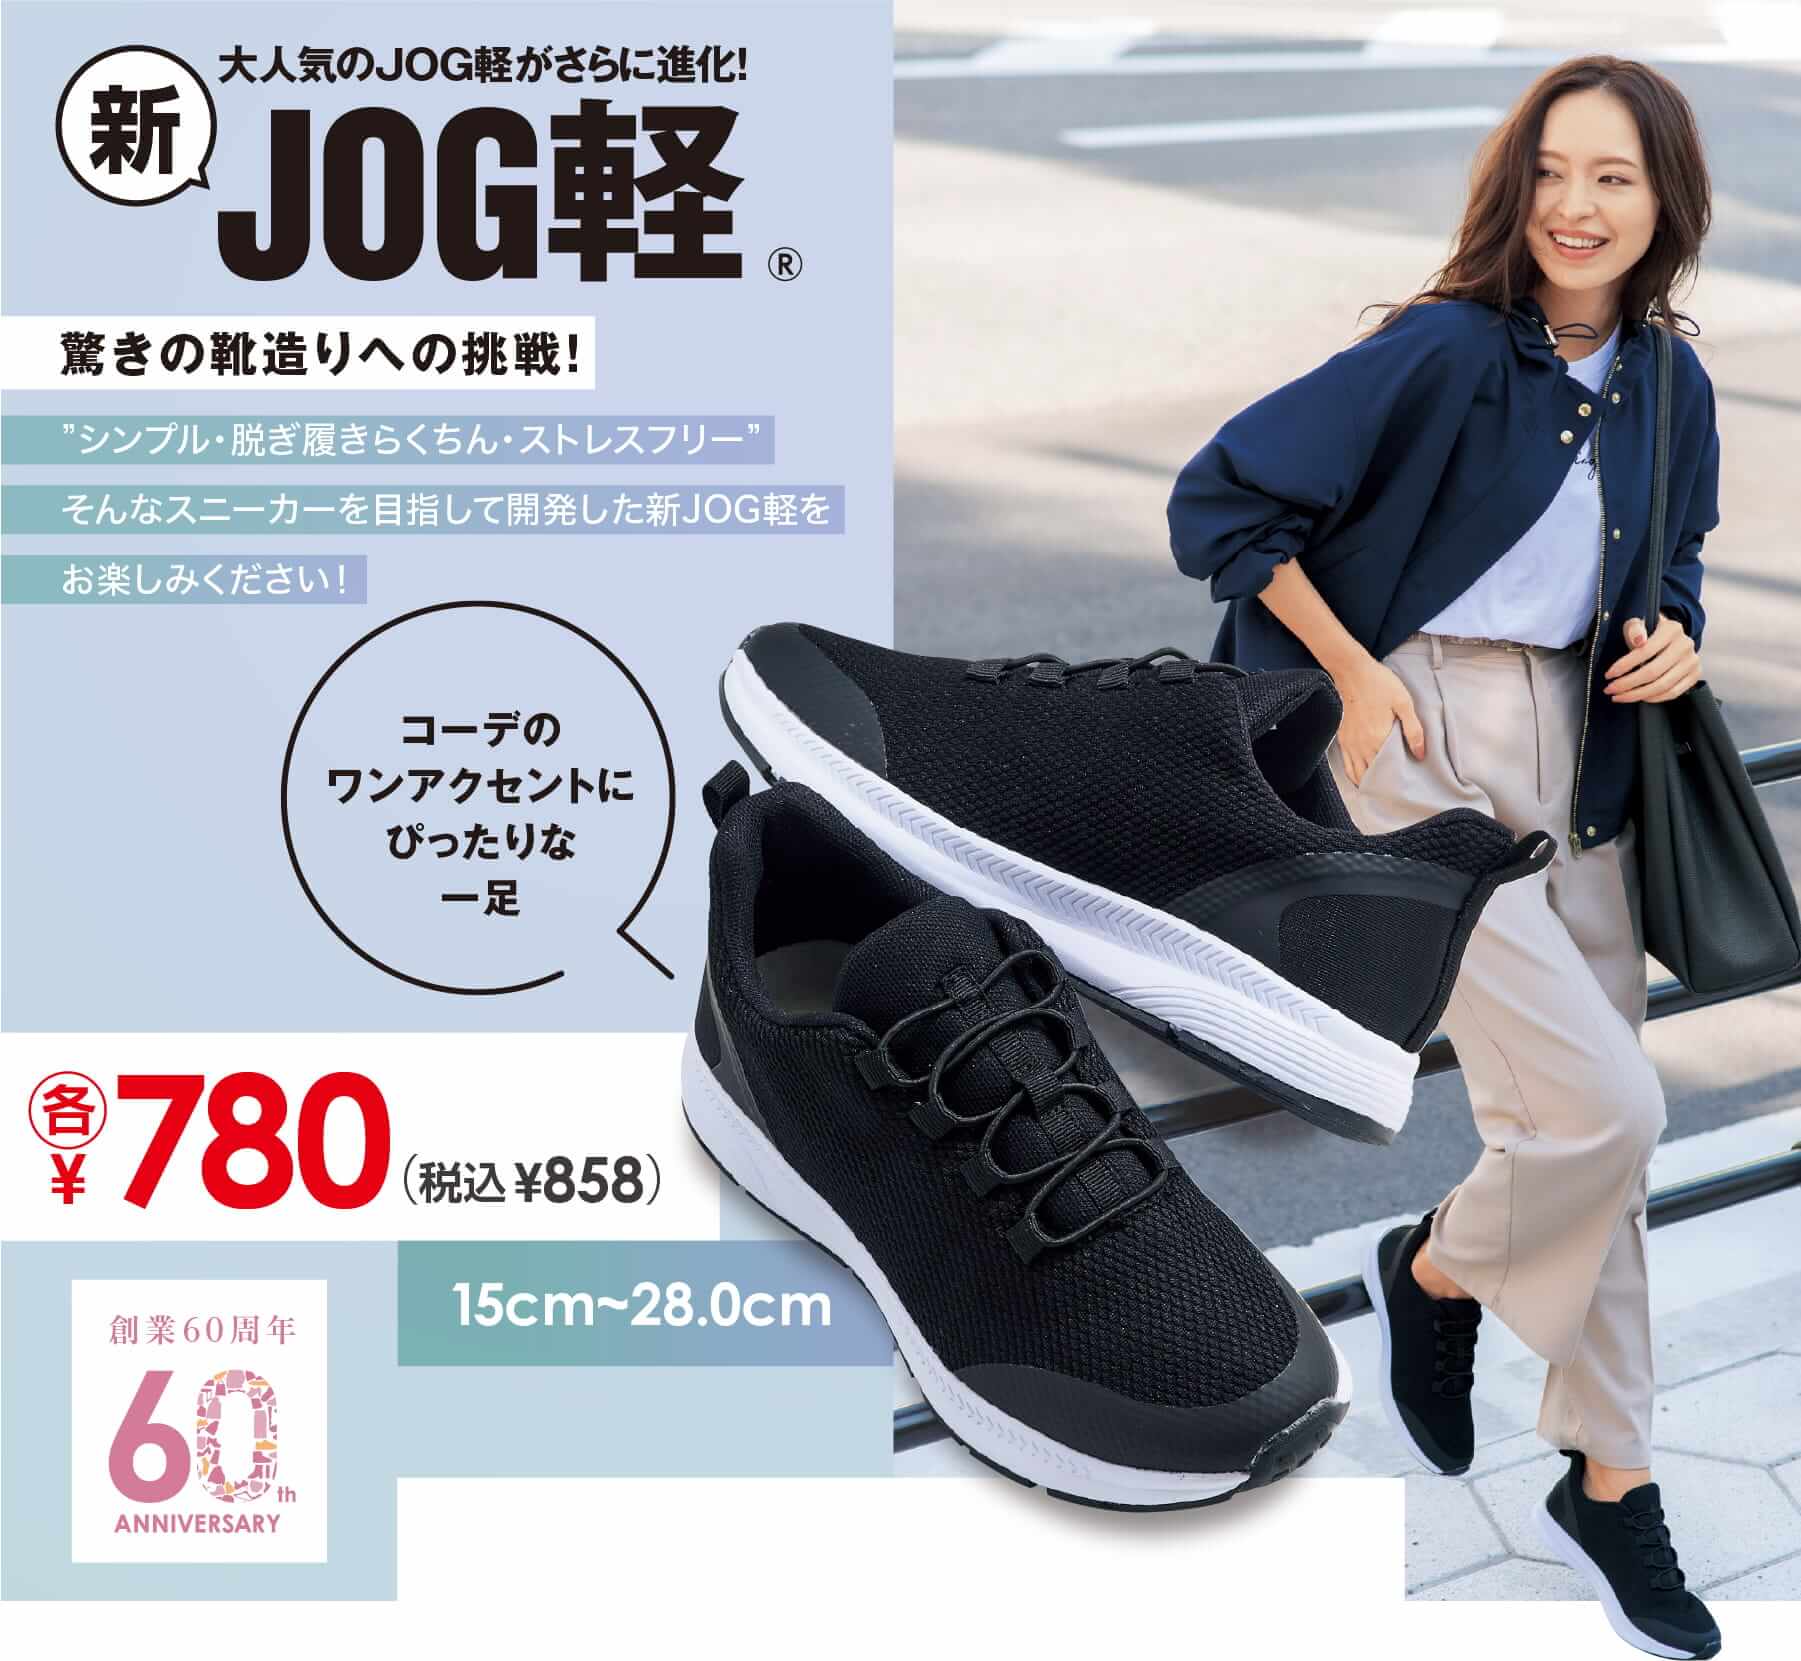 大人気のJOG軽がさらに進化！ 新JOG軽® 驚きの靴造りへの挑戦！ ”シンプル・脱ぎ履きらくちん・ストレスフリー”そんなスニーカーを目指して開発した新JOG軽をお楽しみください！ コーデのワンアクセントにぴったりな一足　各¥780+税